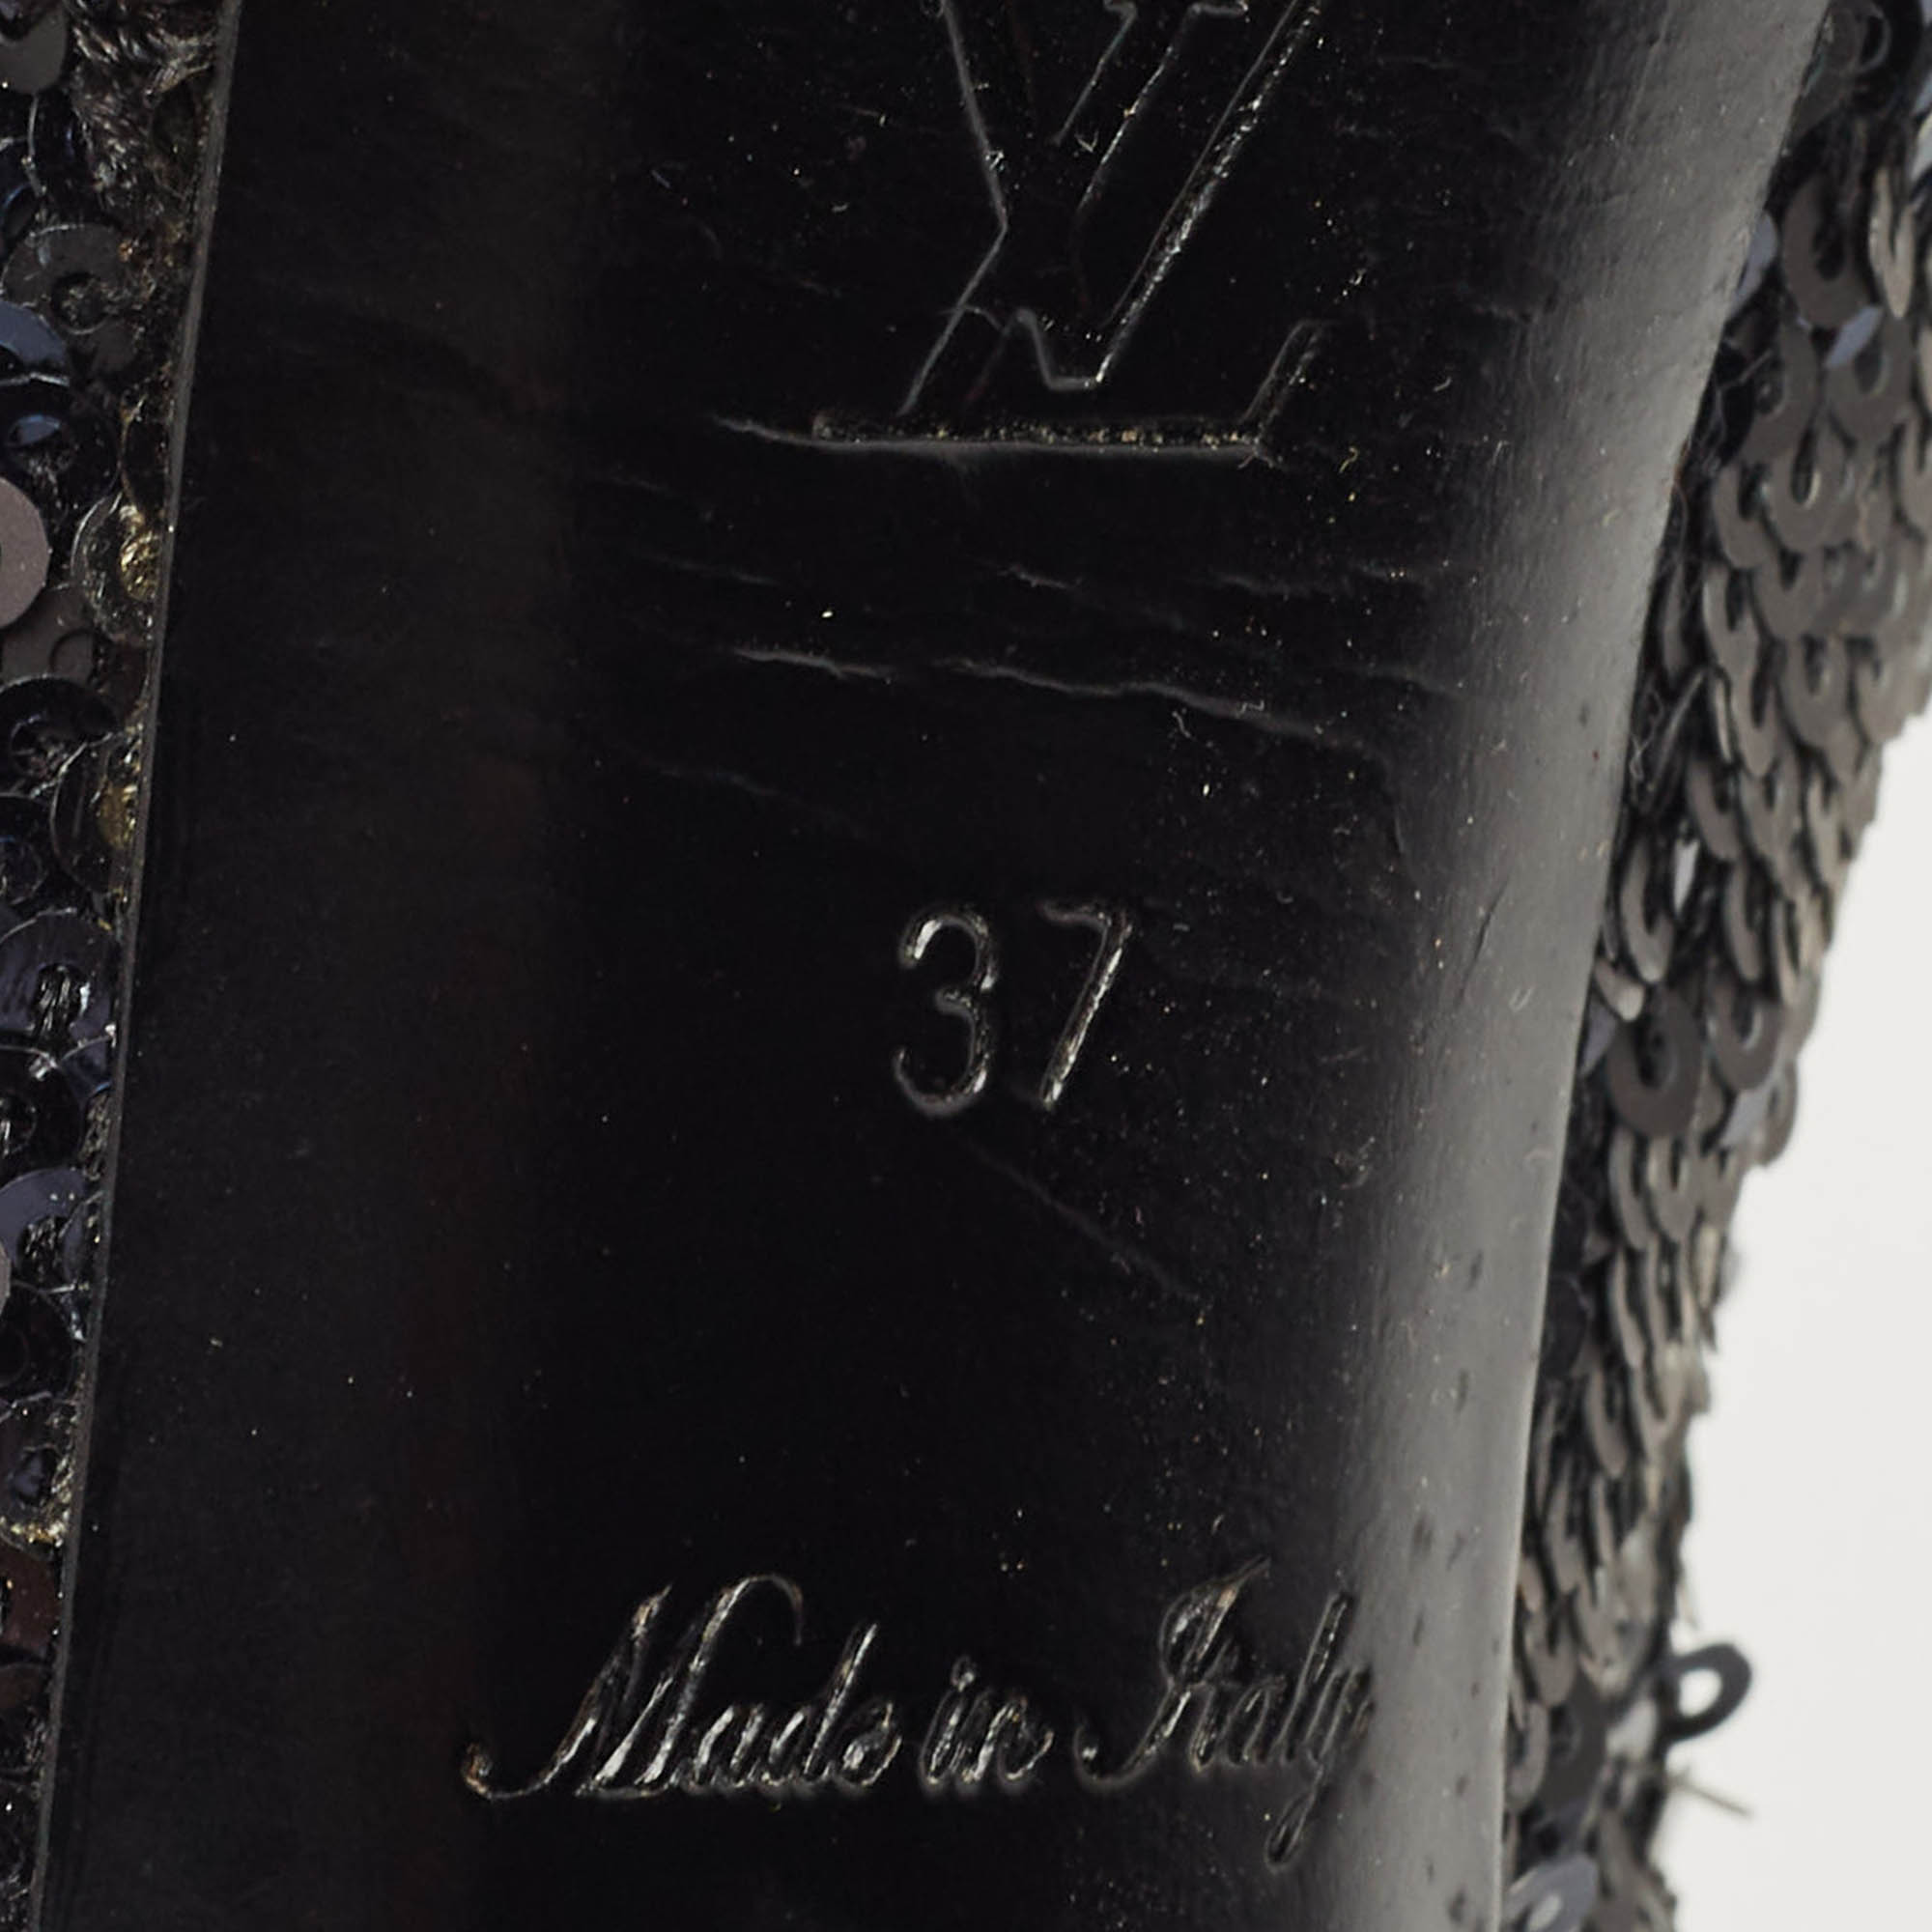 Louis Vuitton Navy Blue/Black Sequins Peep Toe Platform Pumps Size 37